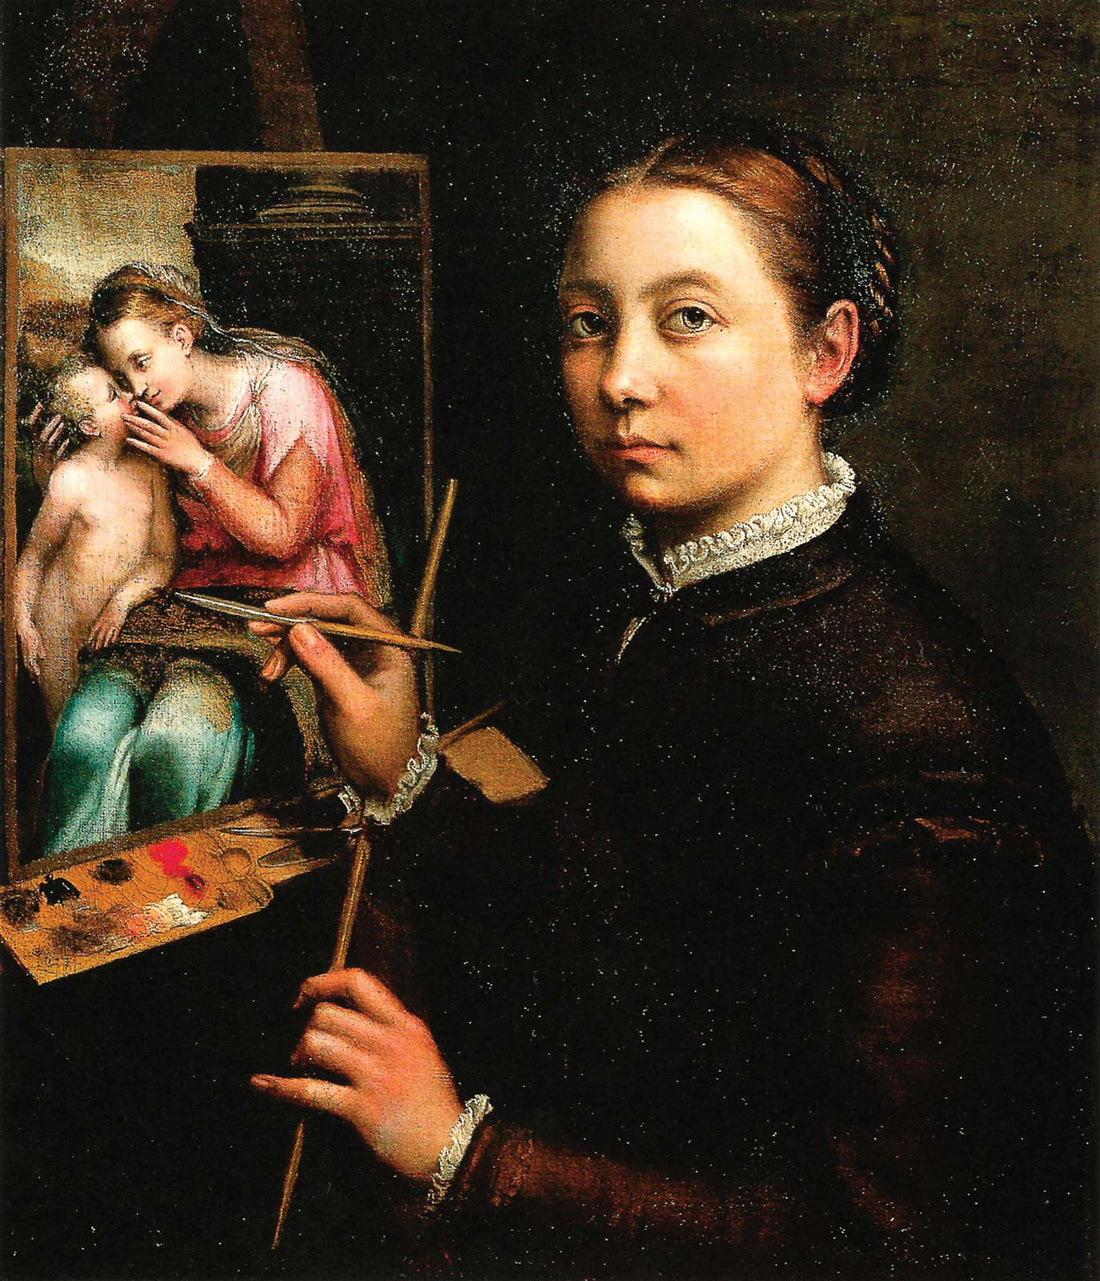 Nữ họa sĩ và 500 năm lộng lẫy: bất chấp định kiến, vẽ tranh khỏa thân - Ảnh 3.